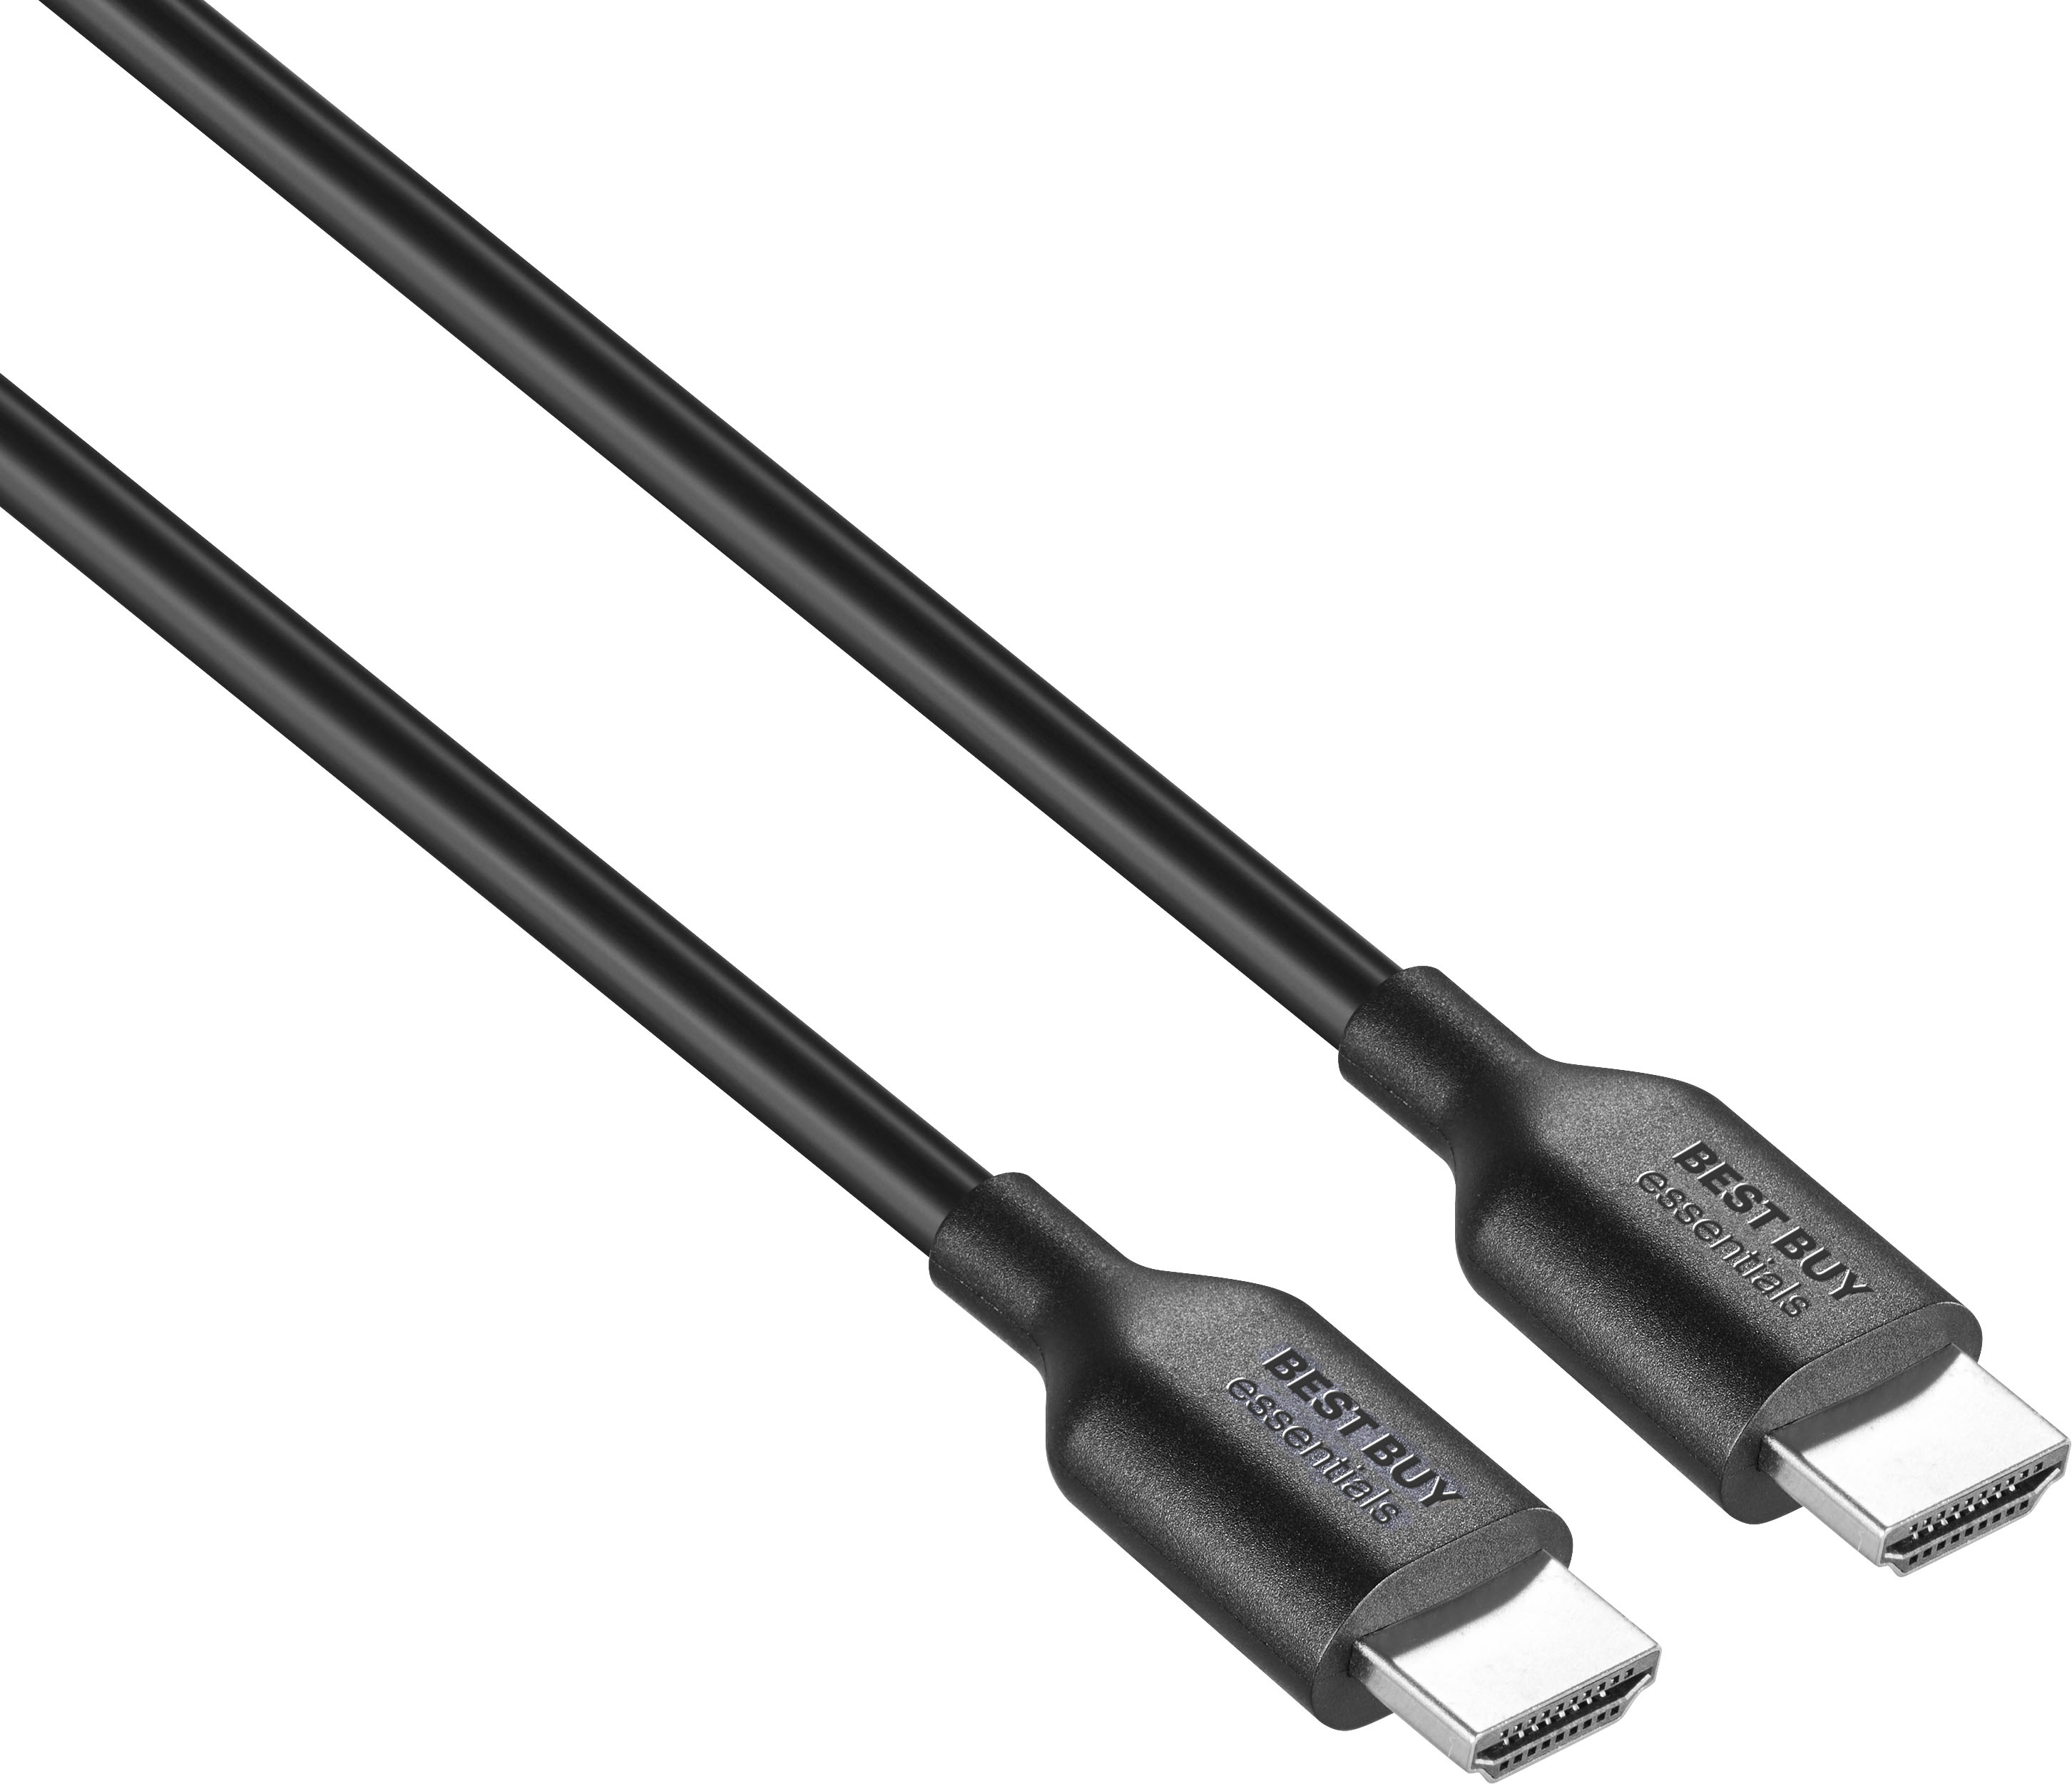 Ofertas en Cables HDMI al mejor precio